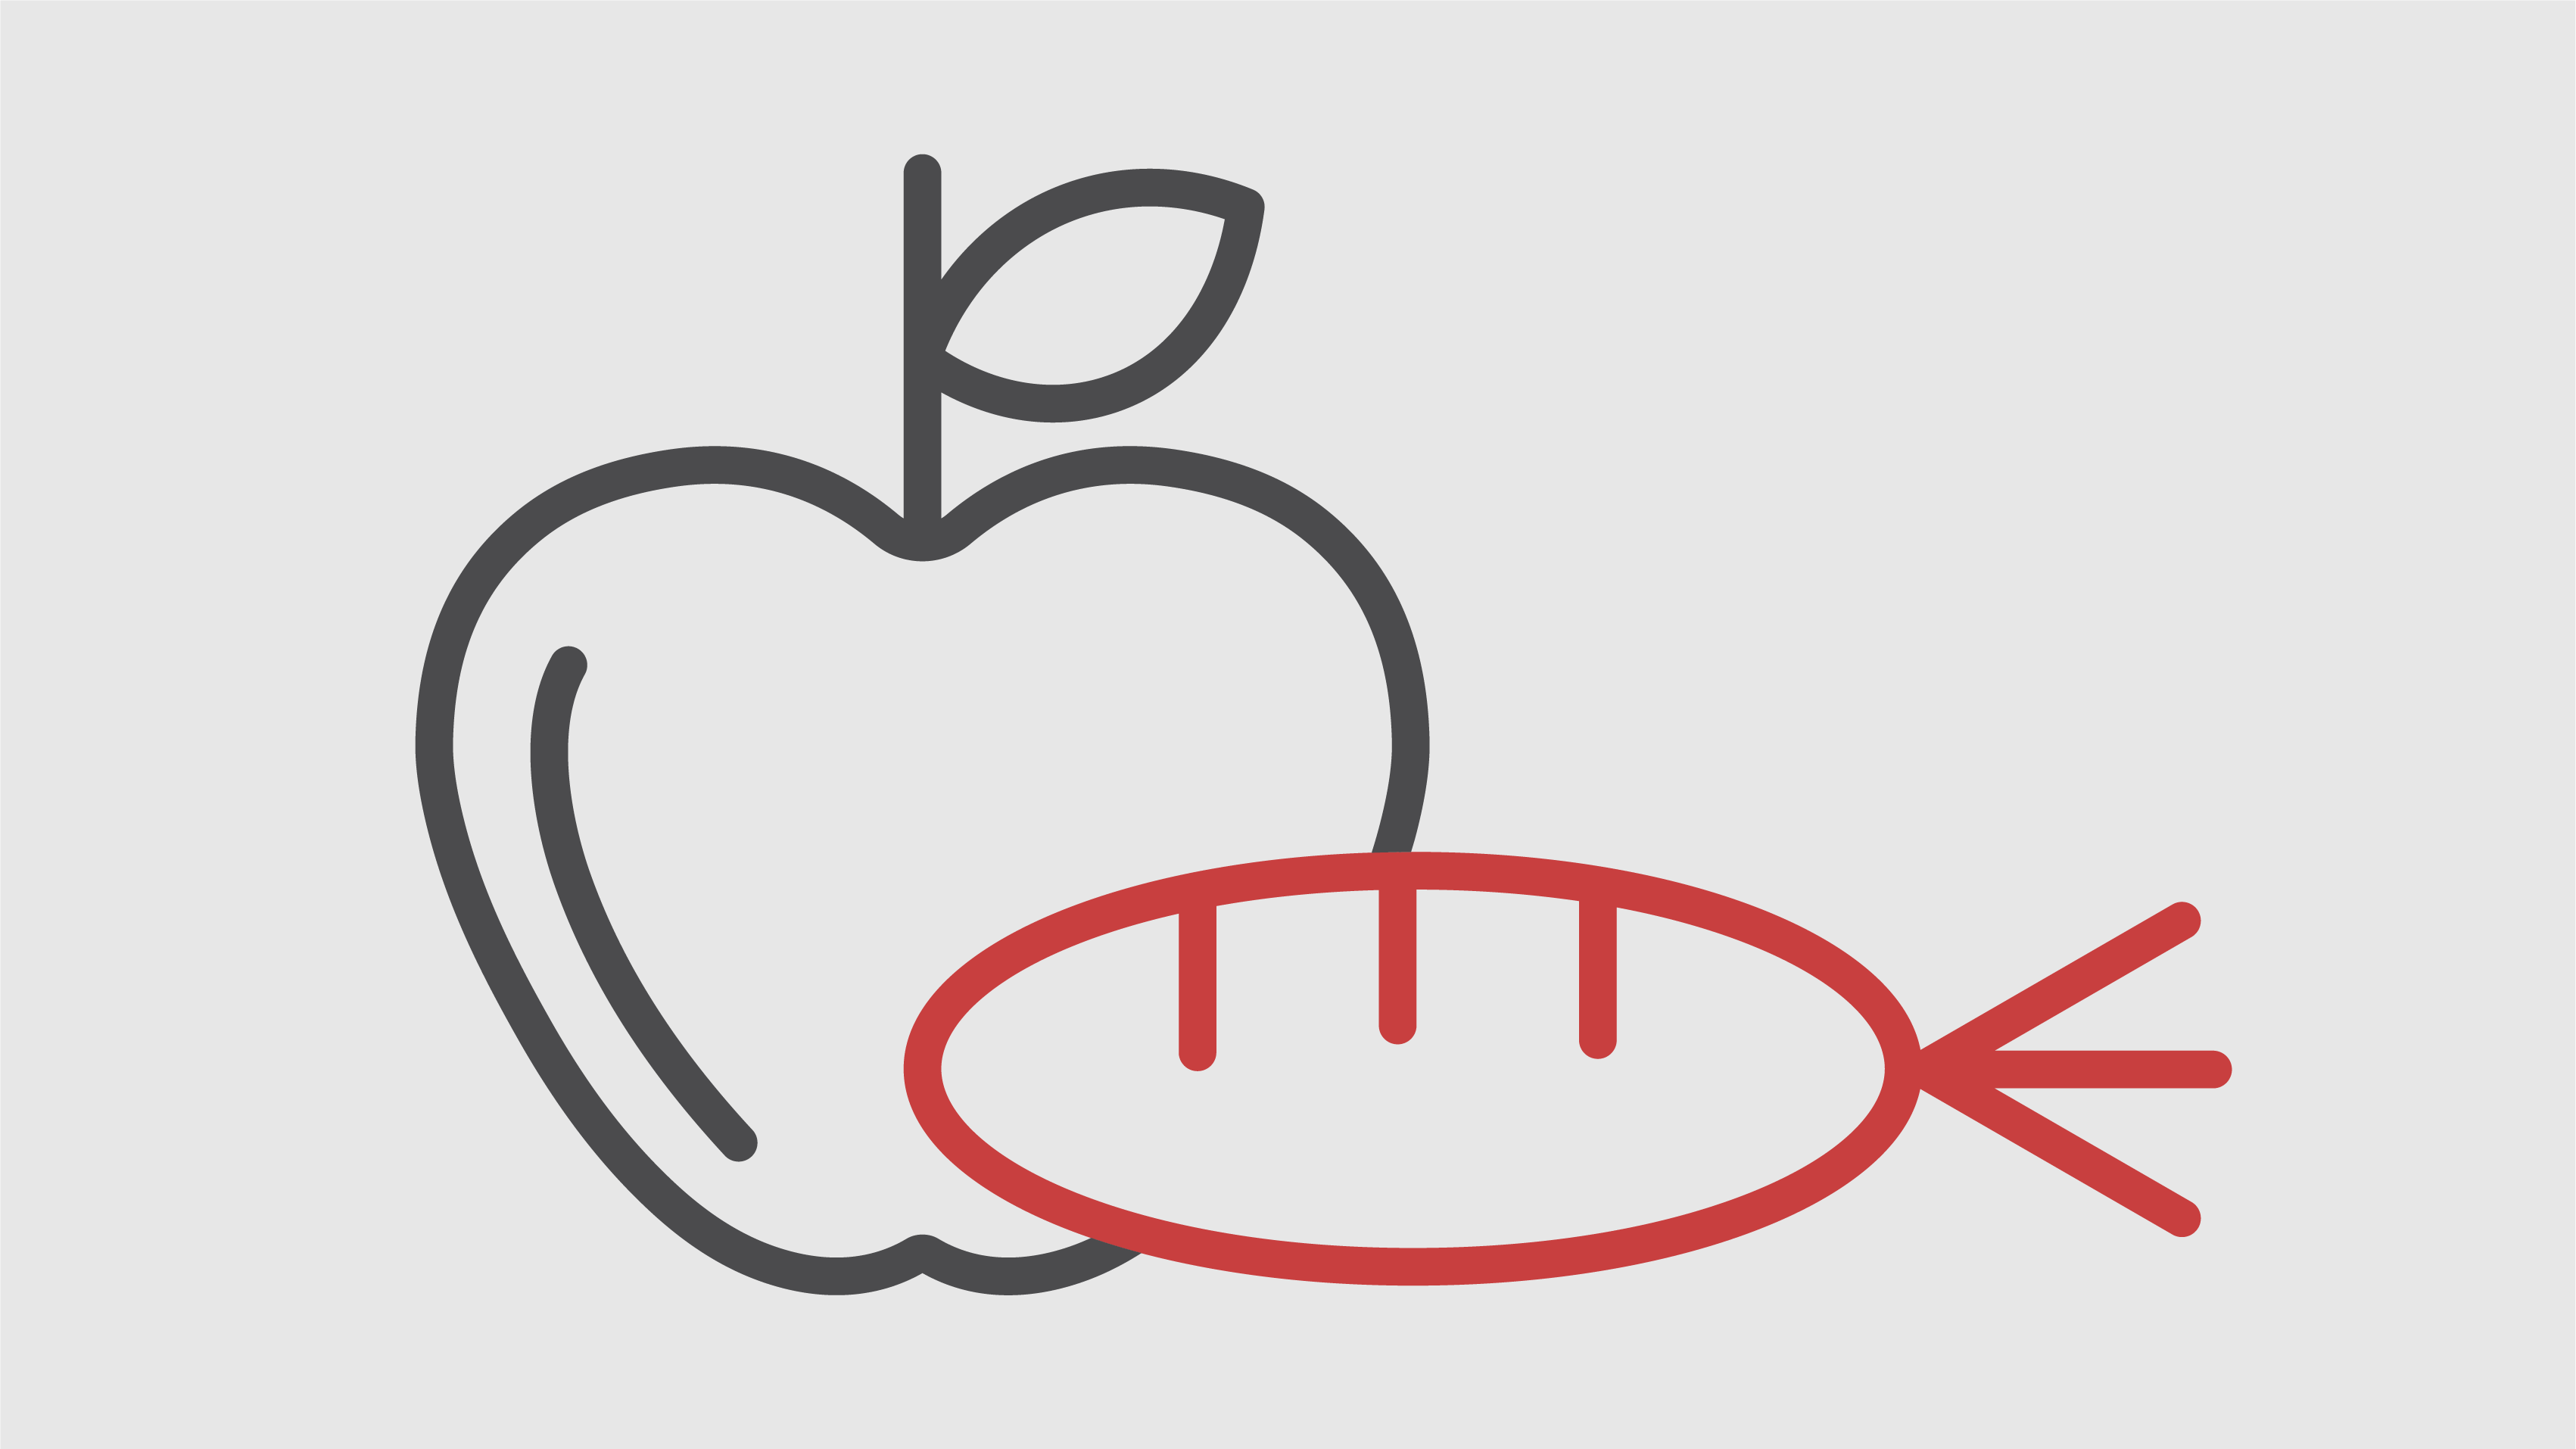 Piktogramm eines Apfels und einer Möhre